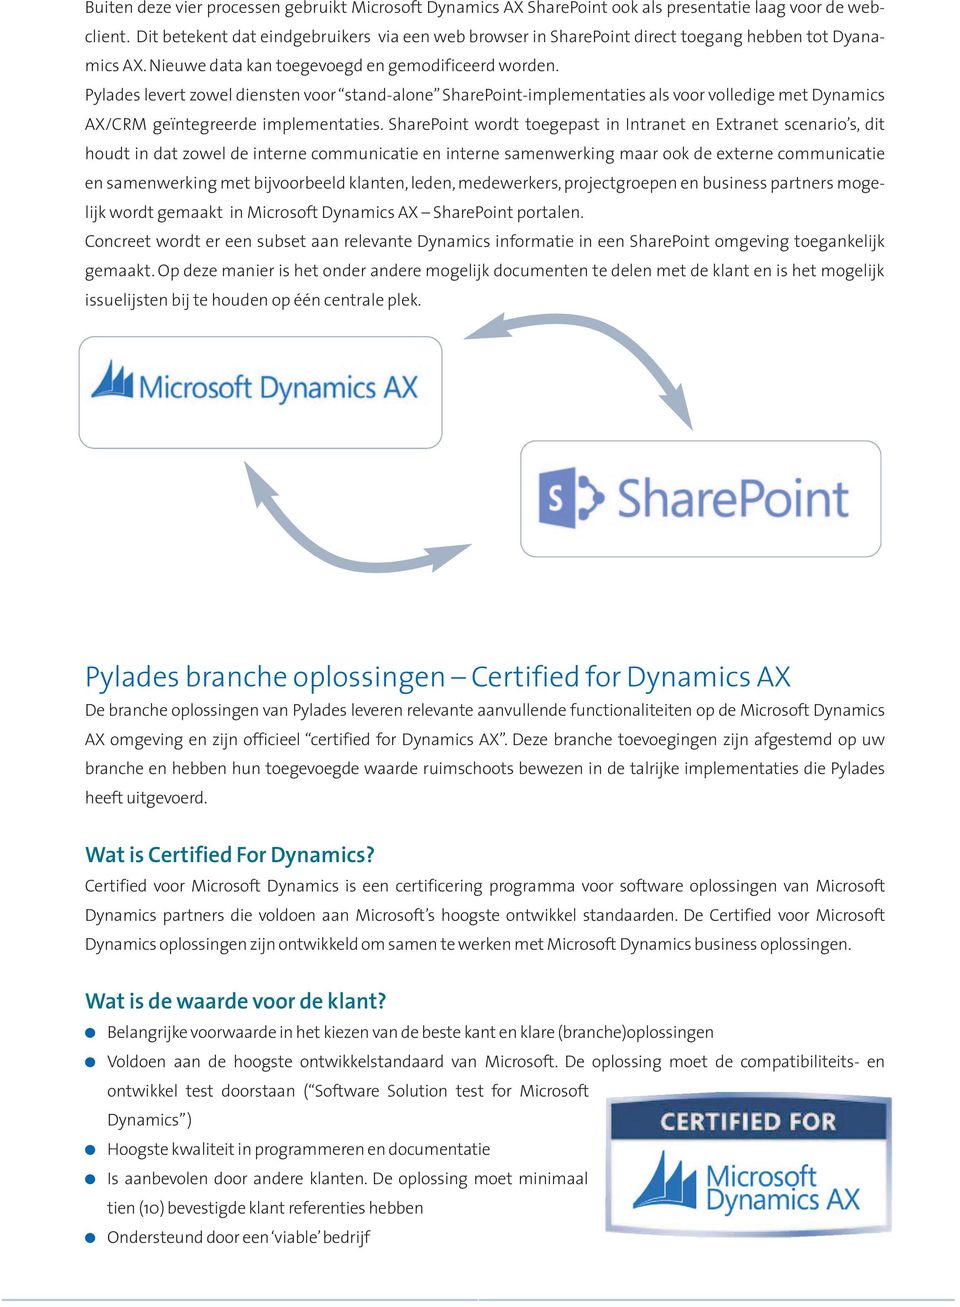 Pyades evert zowe diensten voor stand-aone SharePoint-impementaties as voor voedige met Dynamics AX/CRM geïntegreerde impementaties.